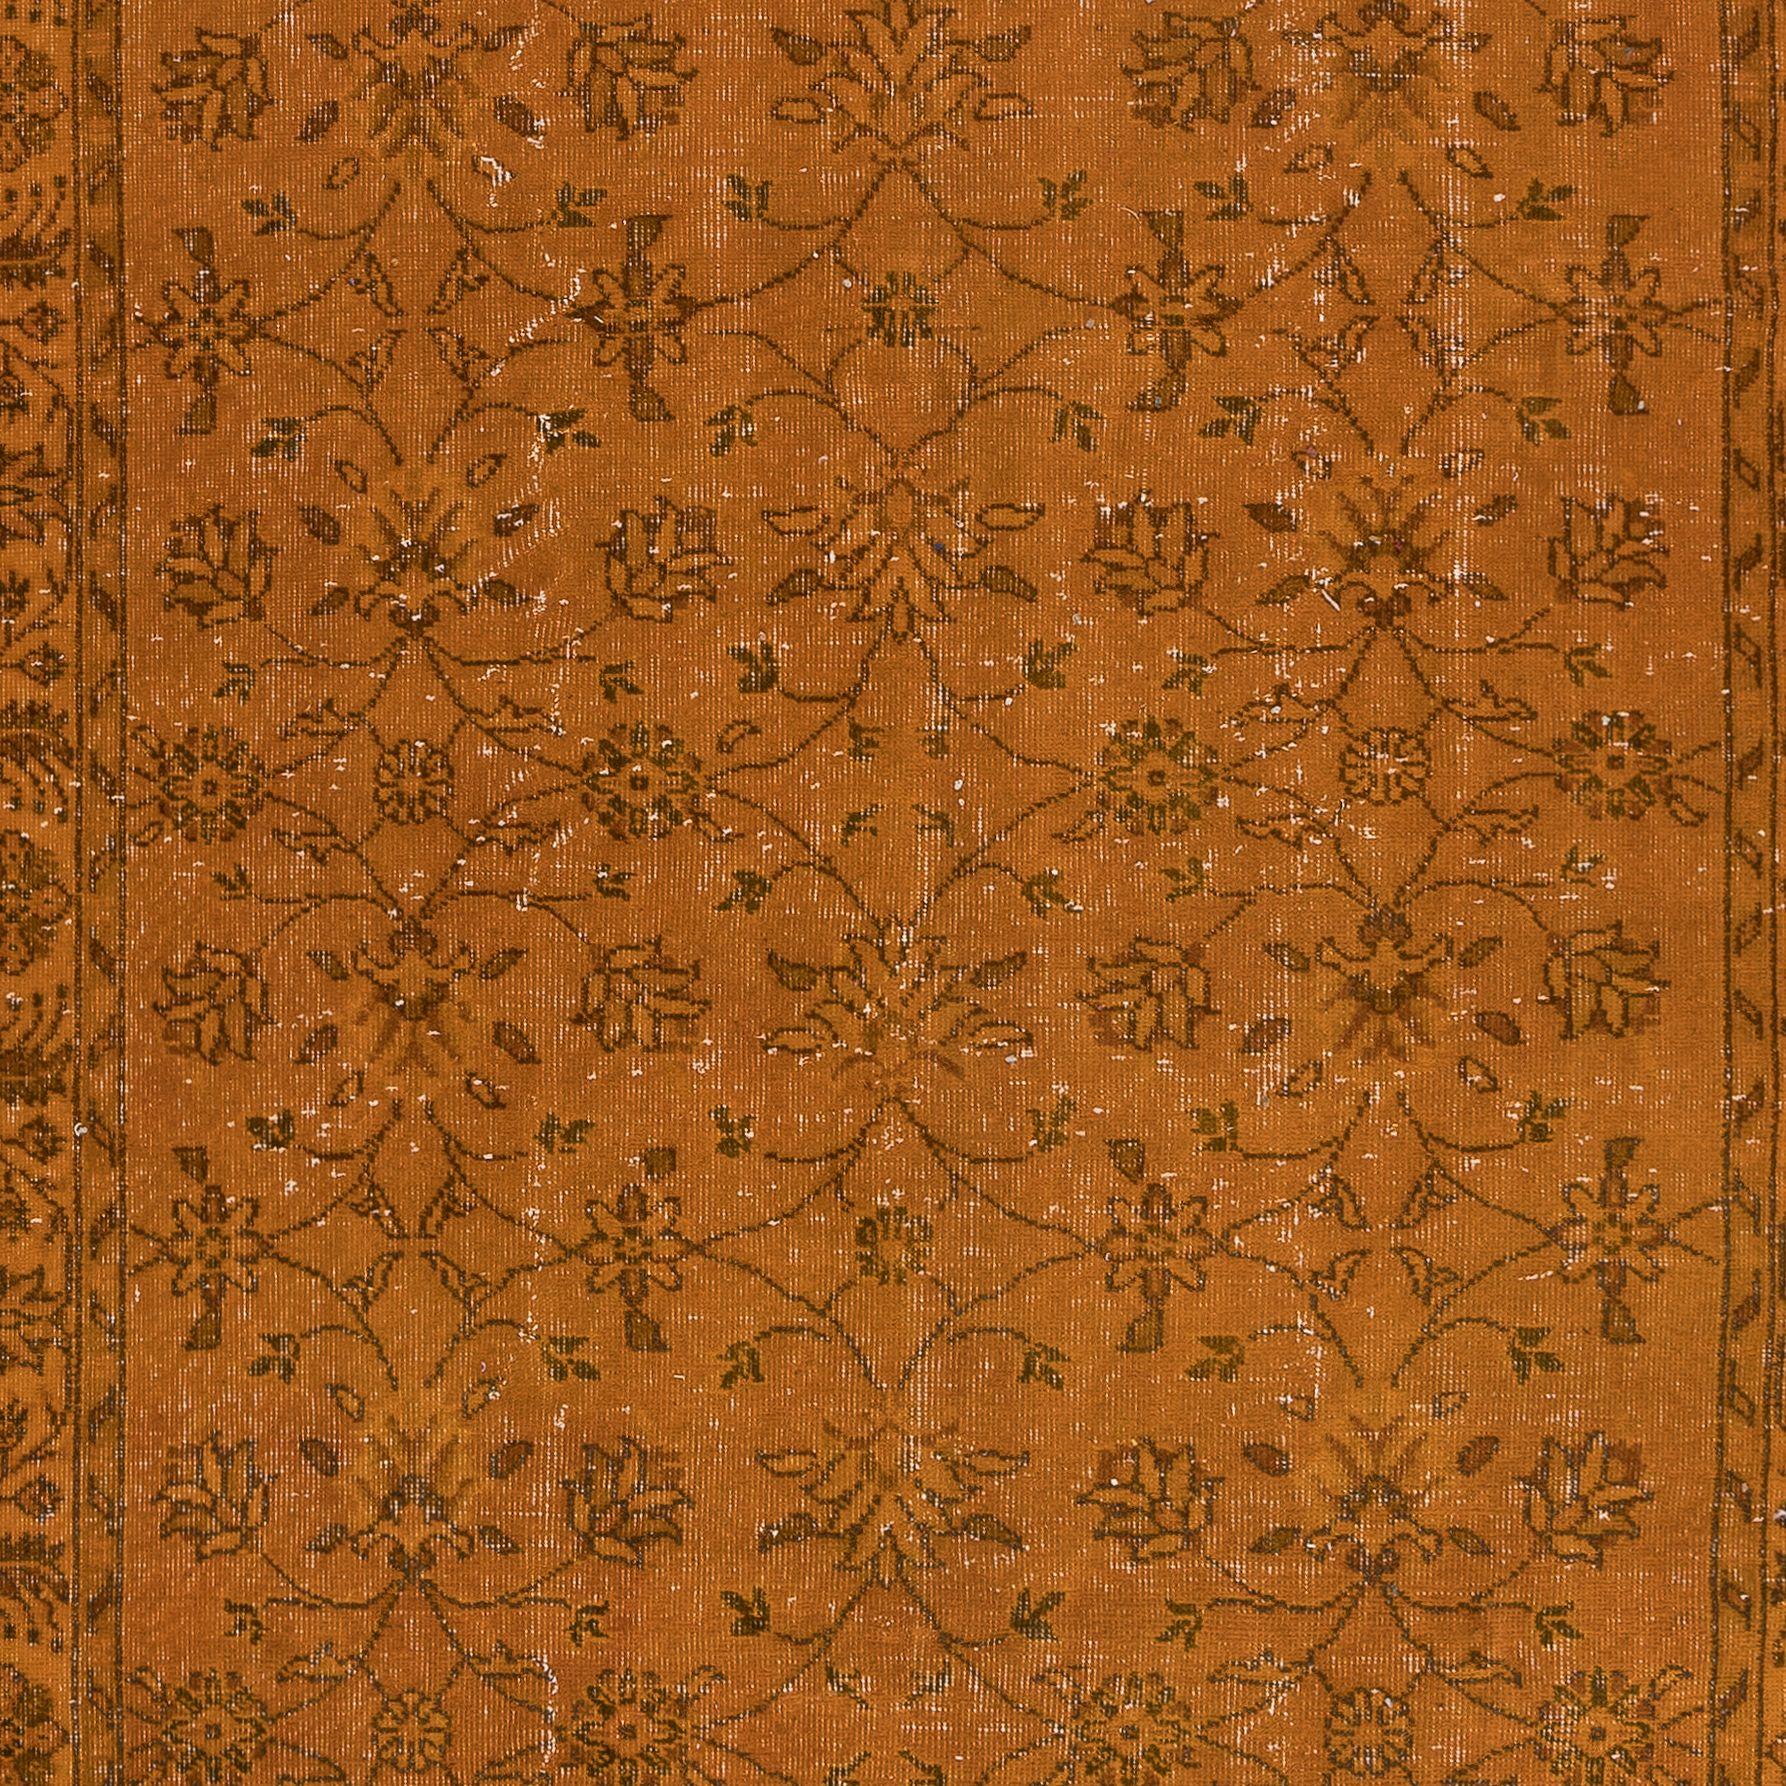 Modern 4x9.4 Ft Handmade Rug with All-Over Floral Design, Orange Turkish Carpet For Sale